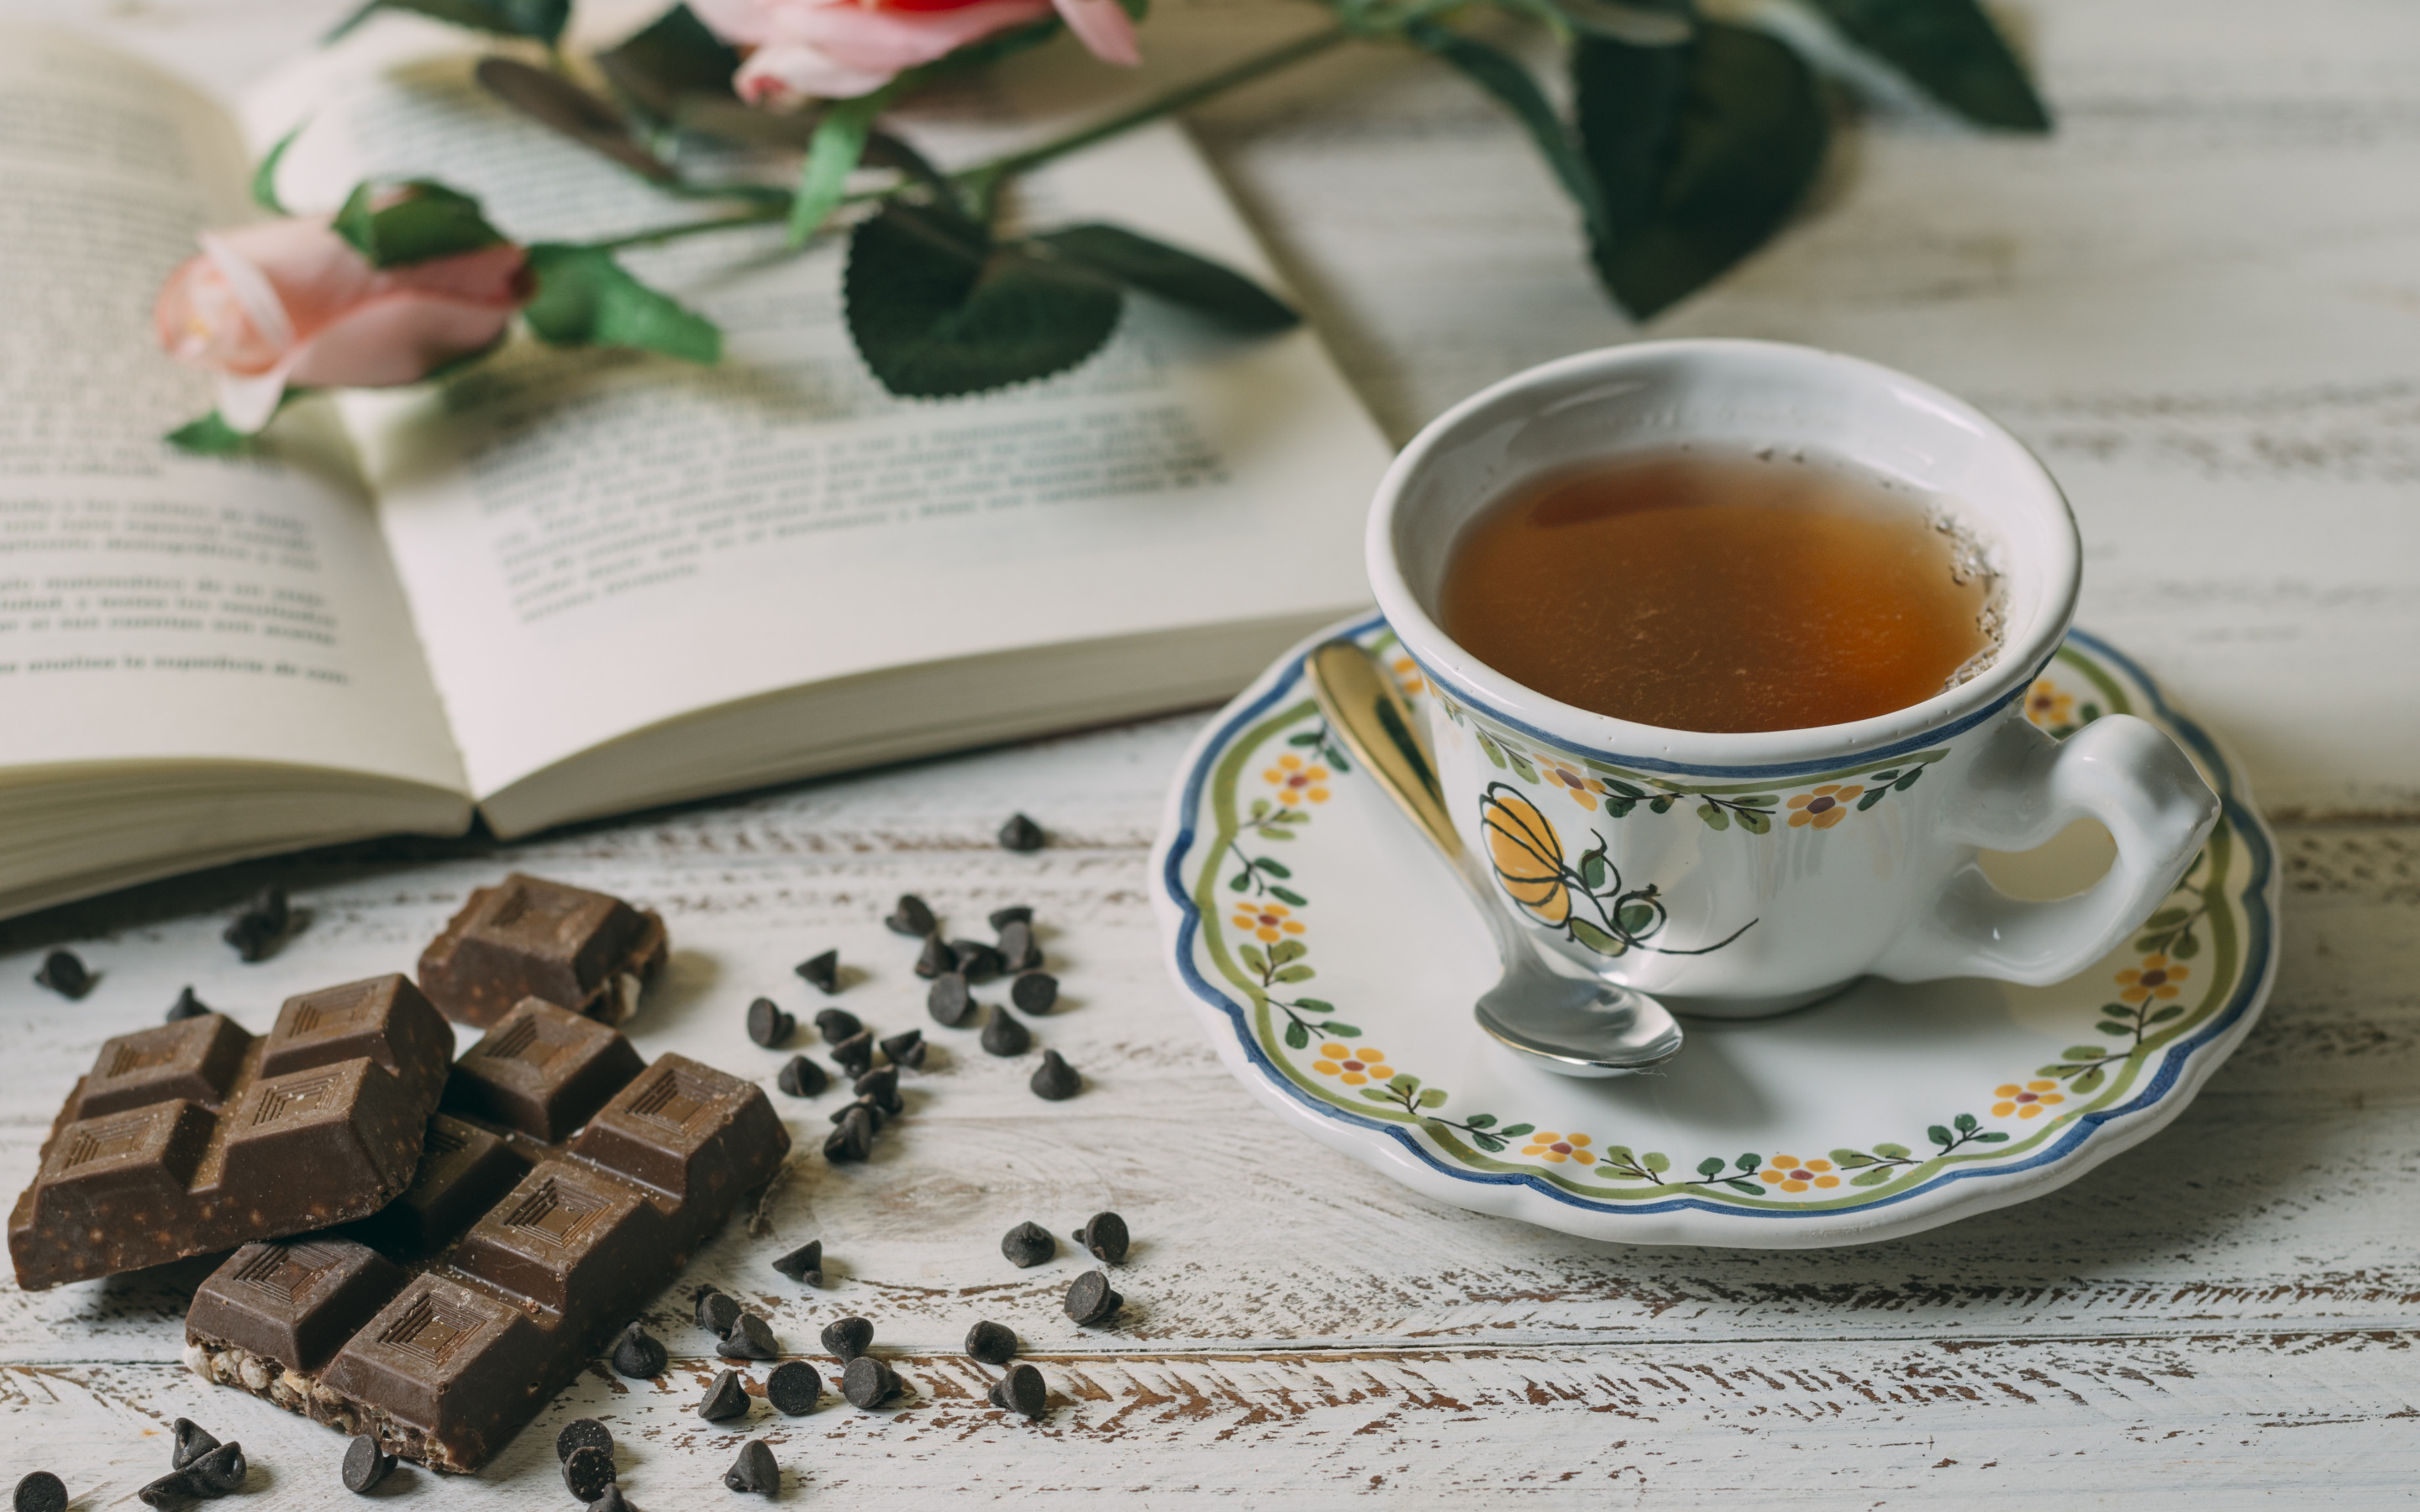 Чай и плитка шоколада. Чай с шоколадом. Шоколадка с чаем. Шоколад с чаем. Чай с шоколадкой картинки.